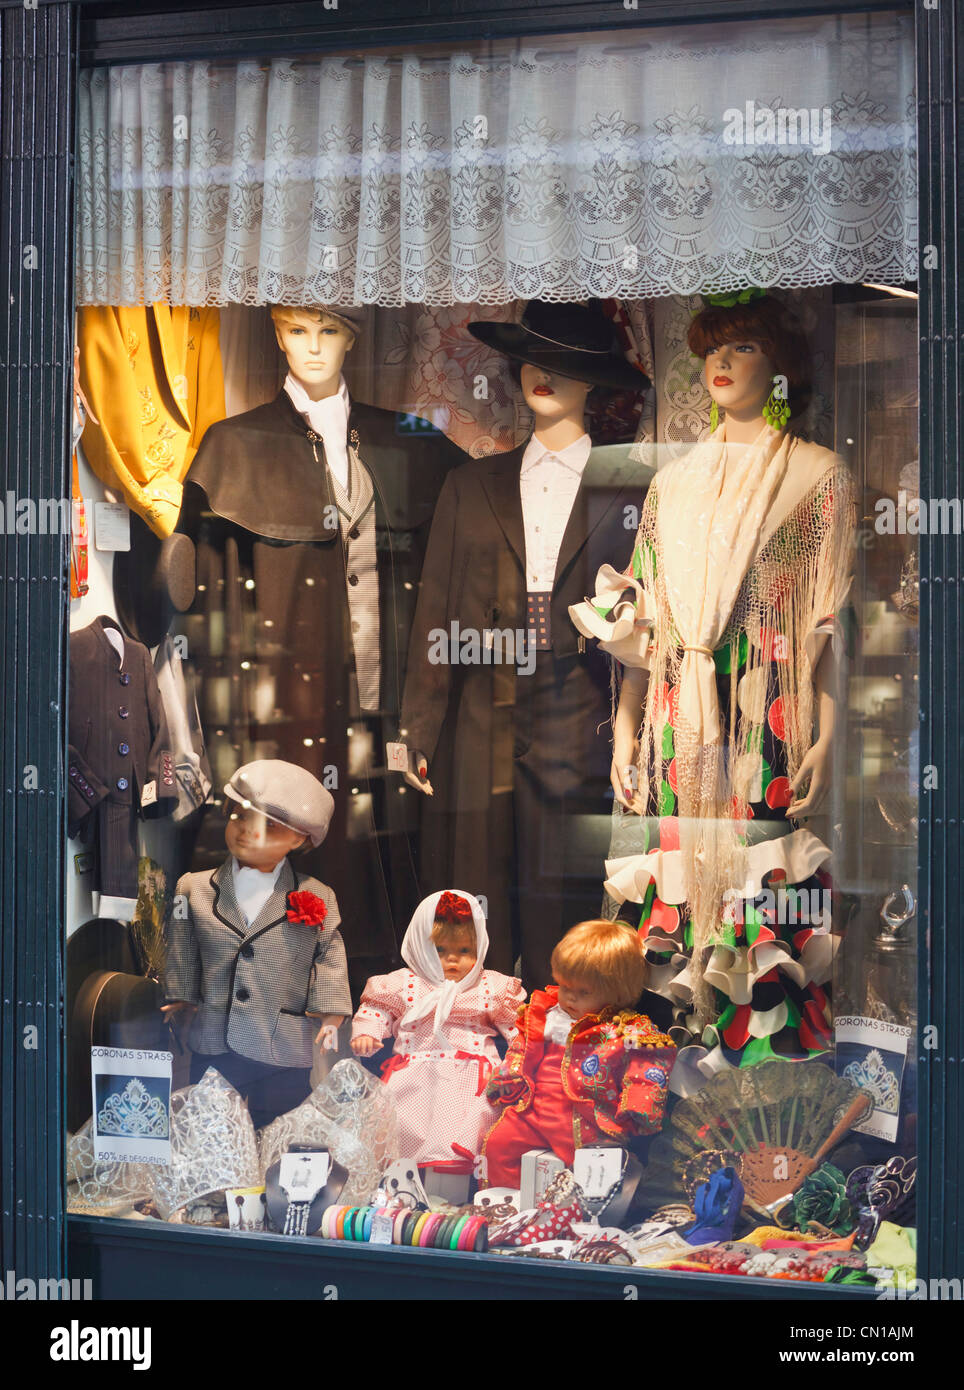 Madrid, Espagne. Fenêtre de magasin spécialisé dans les vêtements typiques espagnoles et des poupées. Banque D'Images